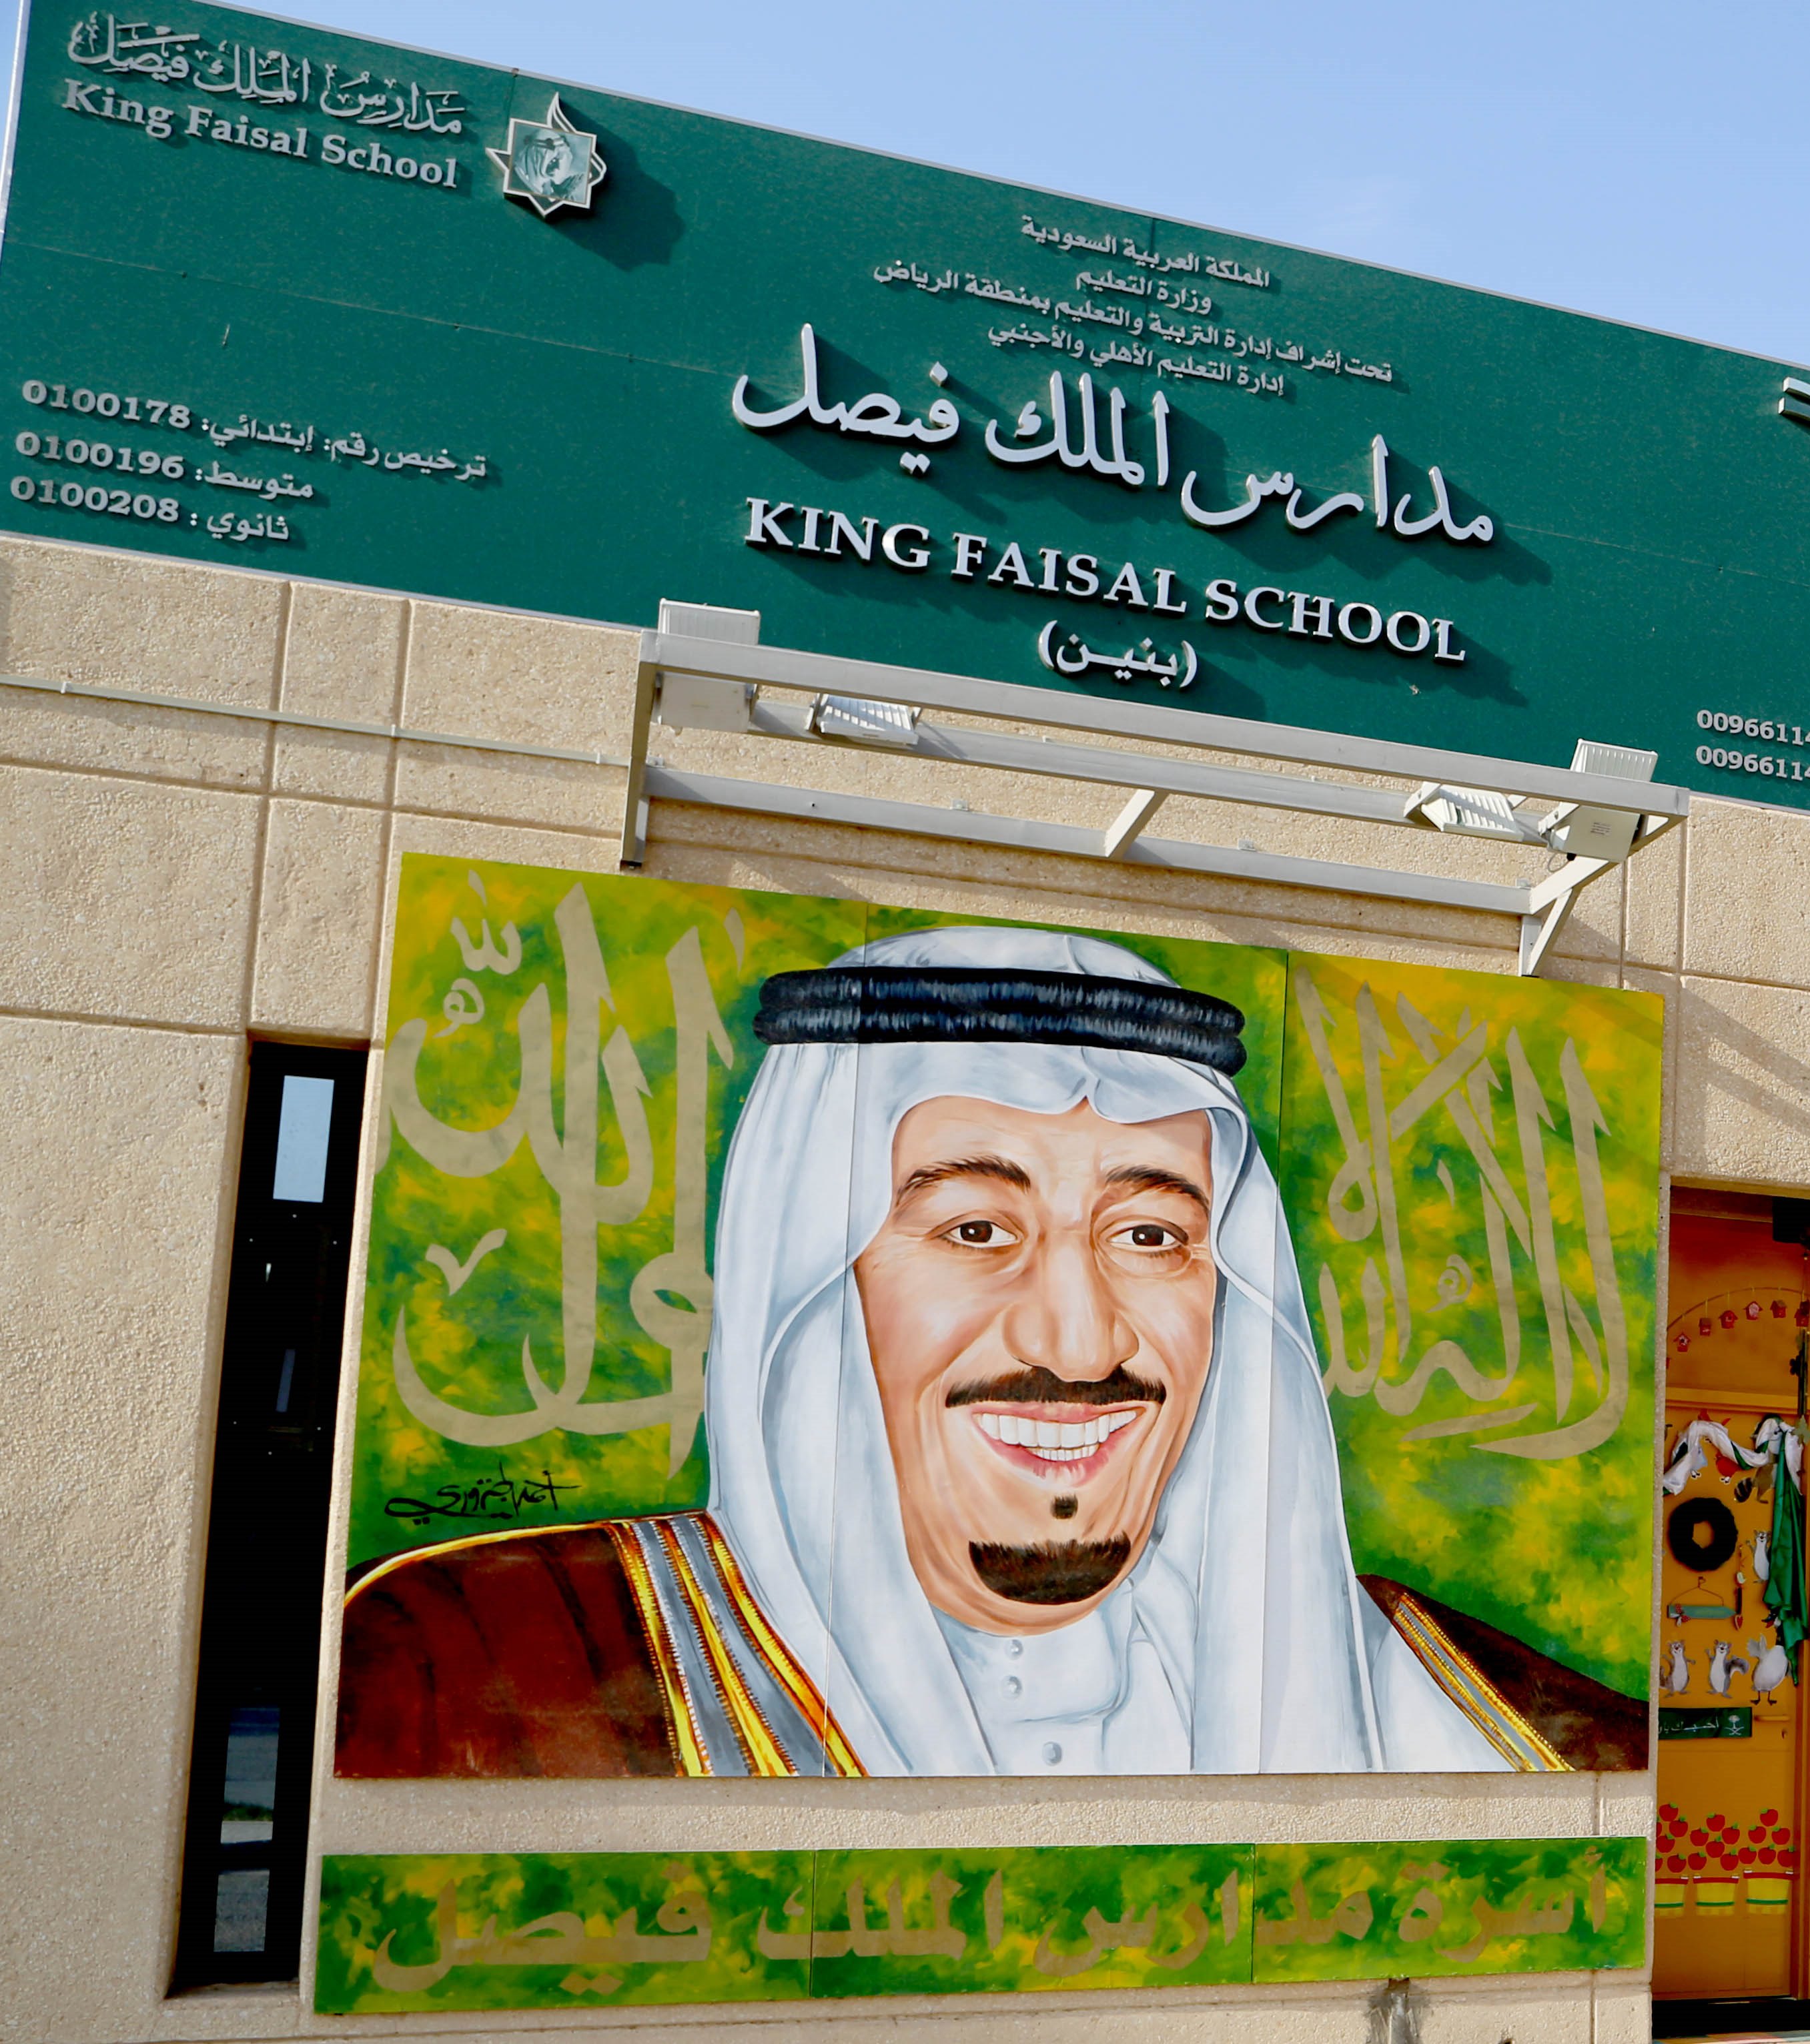 الأمير فيصل بن أحمد: مشاركتي في رسم لوحة #خادم_الحرمين رمزية